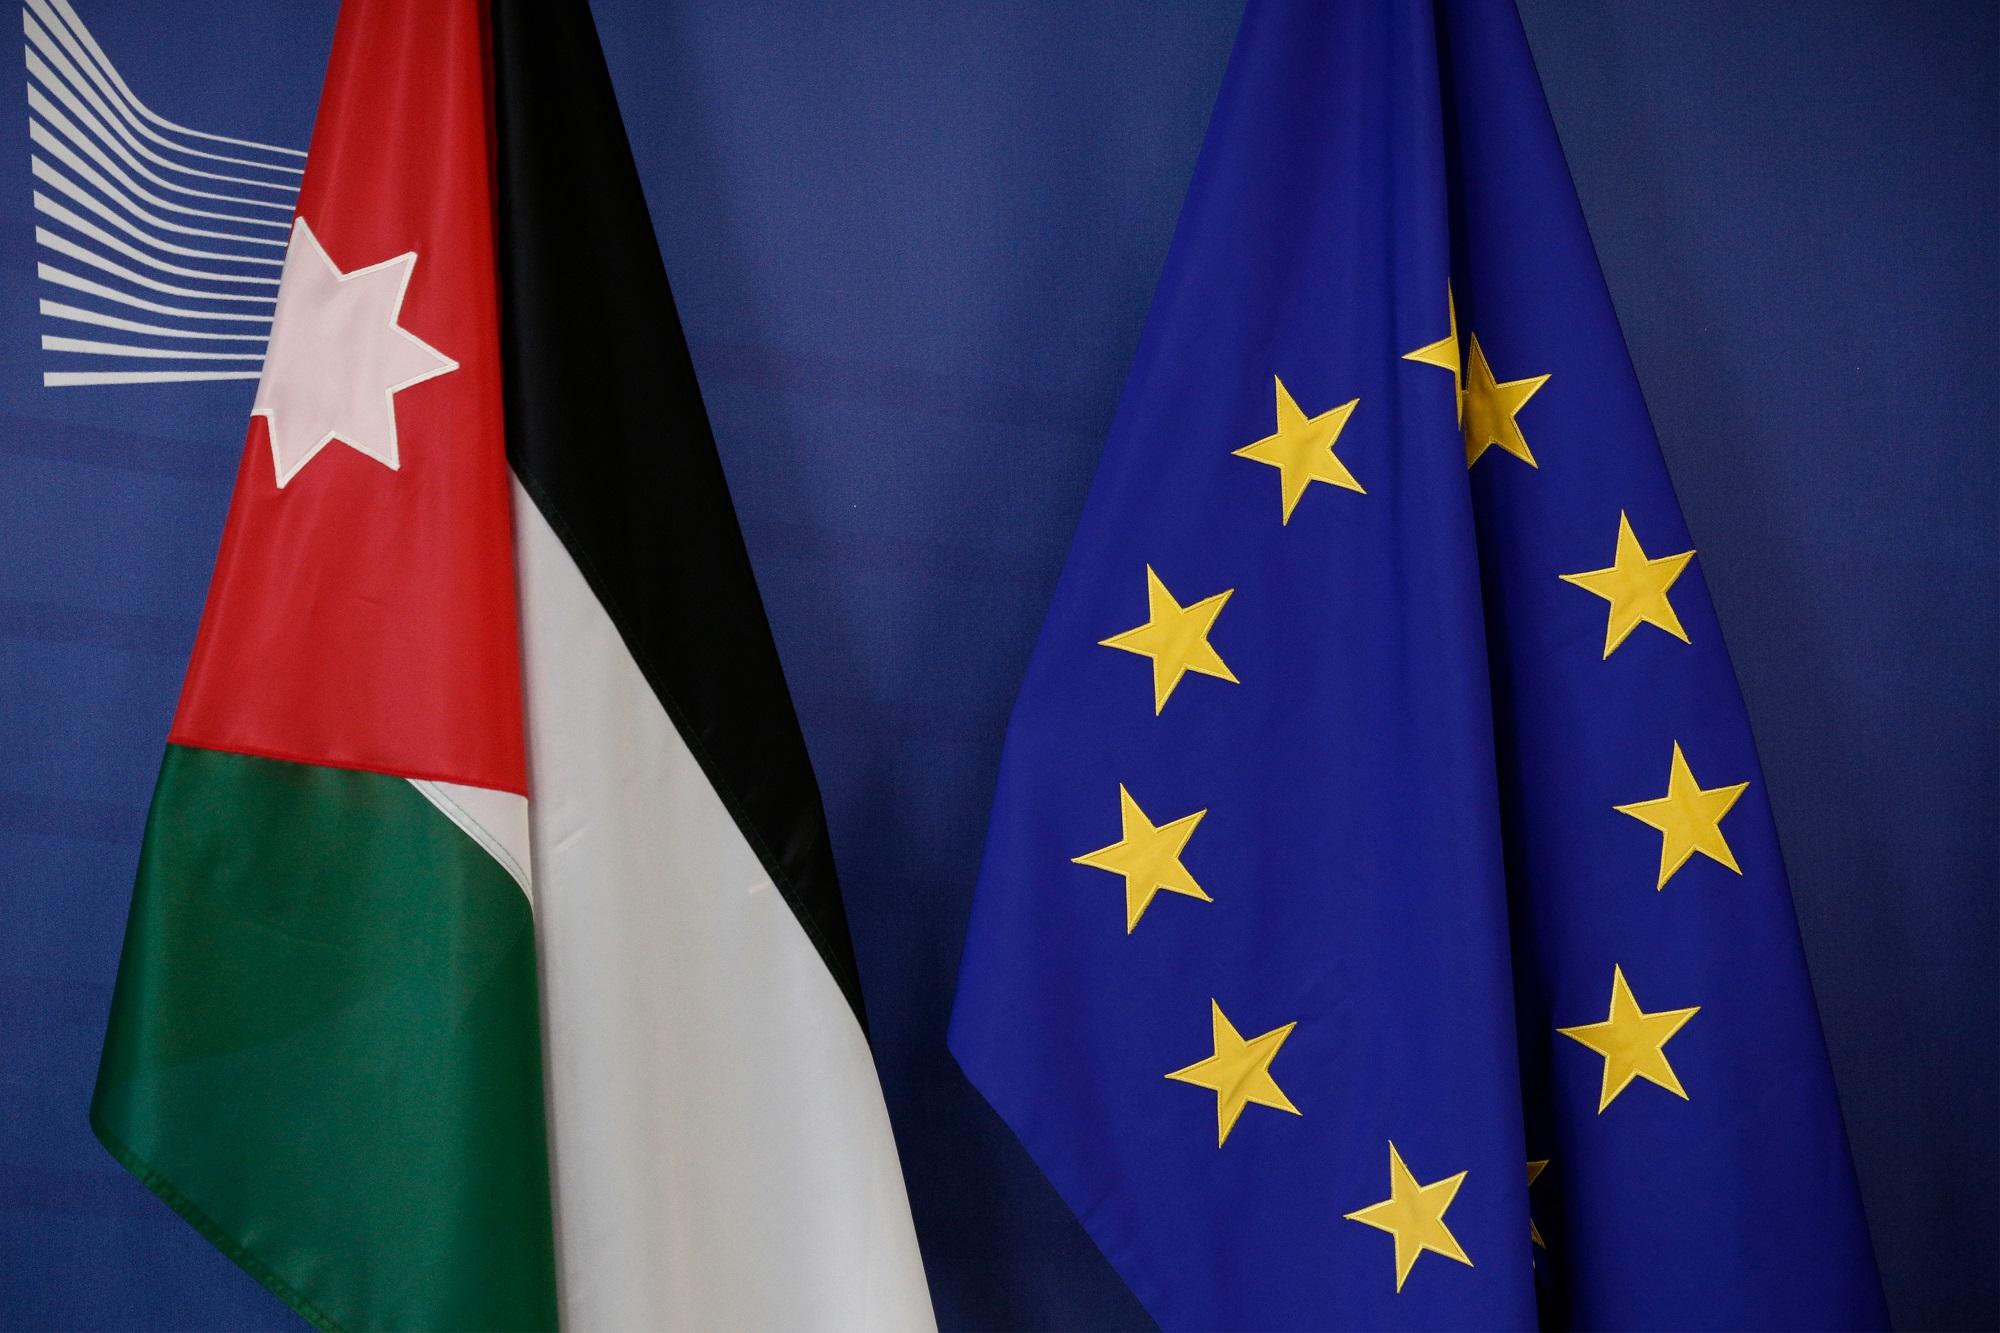 استطلاع: 61% من الأردنيين يثقون بمعلومات التواصل الاجتماعي حول أوروبا